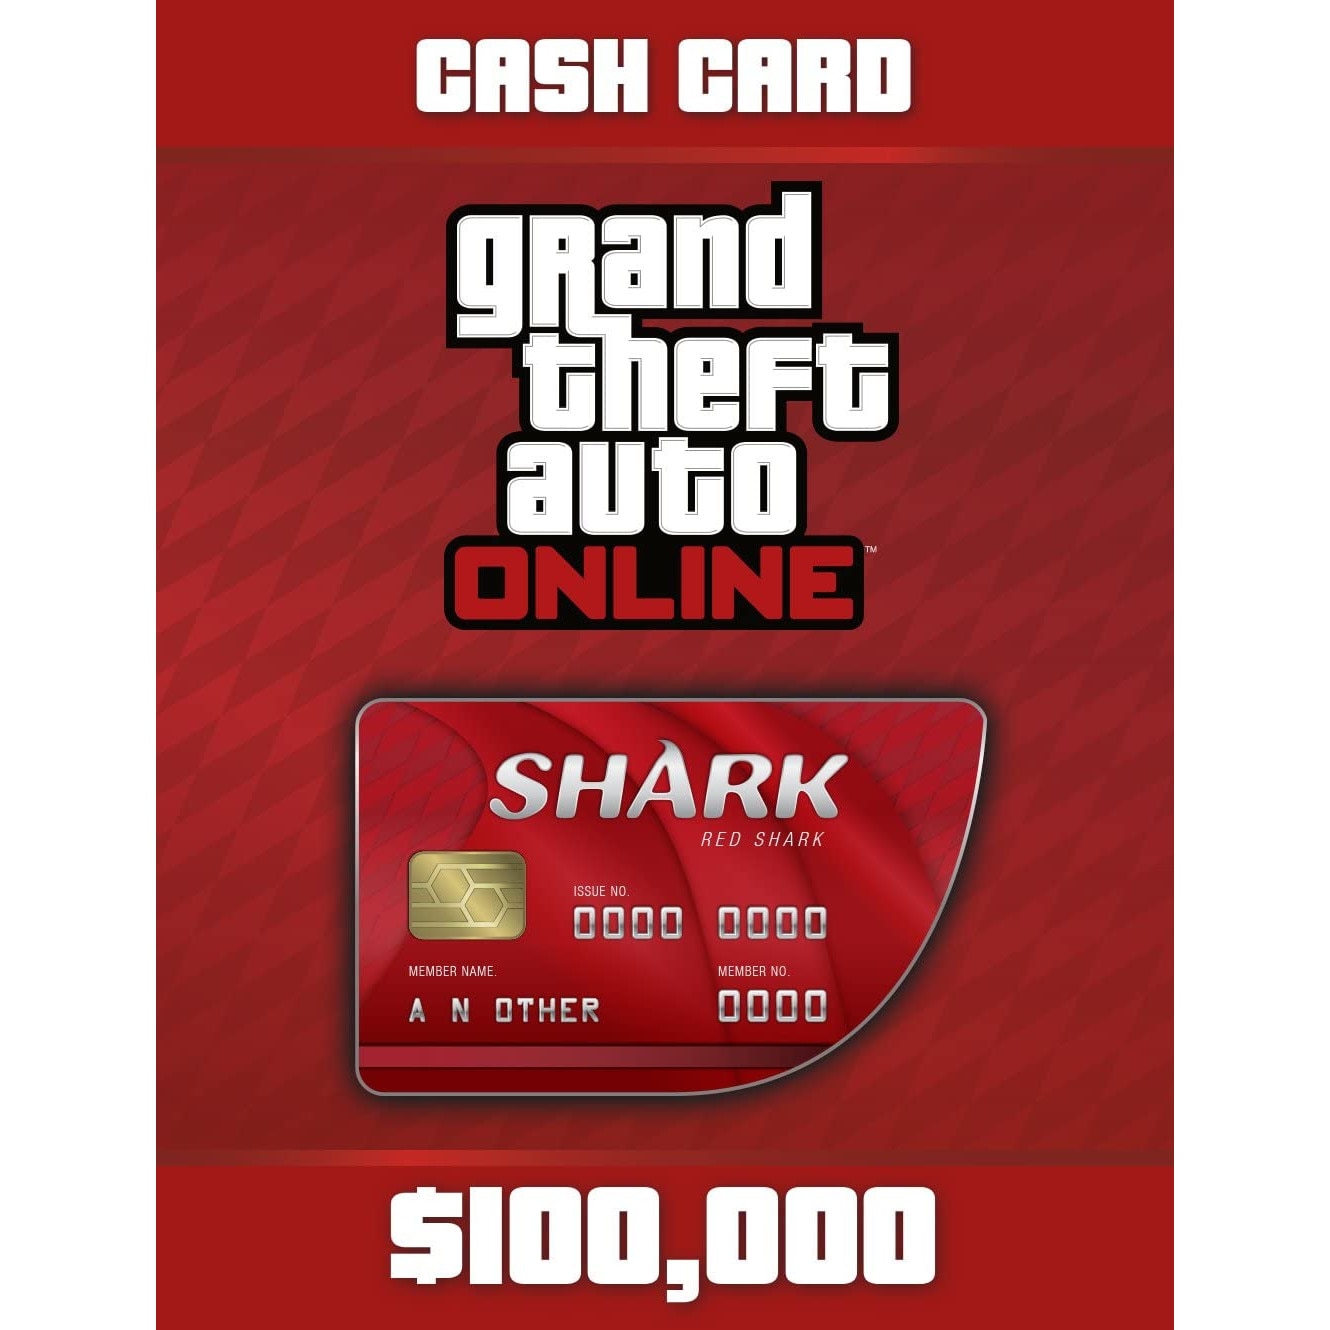 Inspire Billy cigarette Joc GTA V - Red Shark Cash Card 100k Rockstar Social Club Key Global PC  (Cod Activare Instant) - eMAG.ro